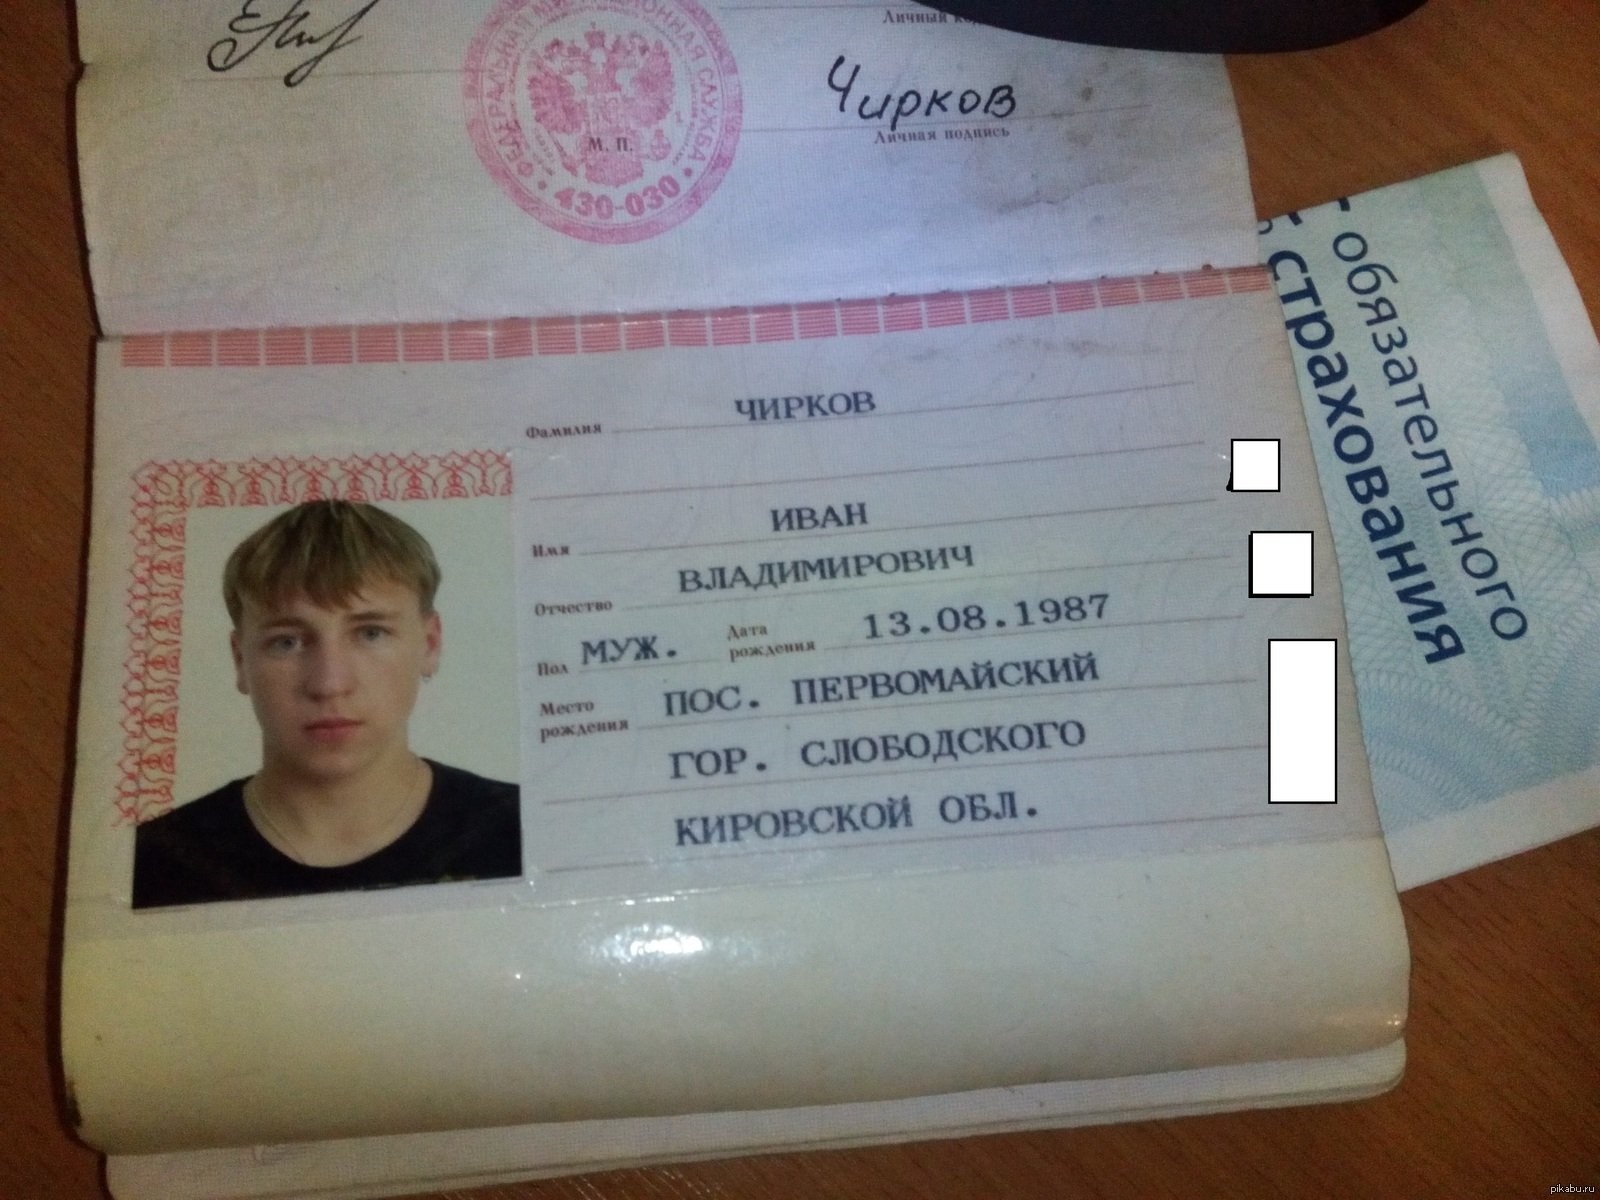 Фото паспорта с сегодняшней датой рождения